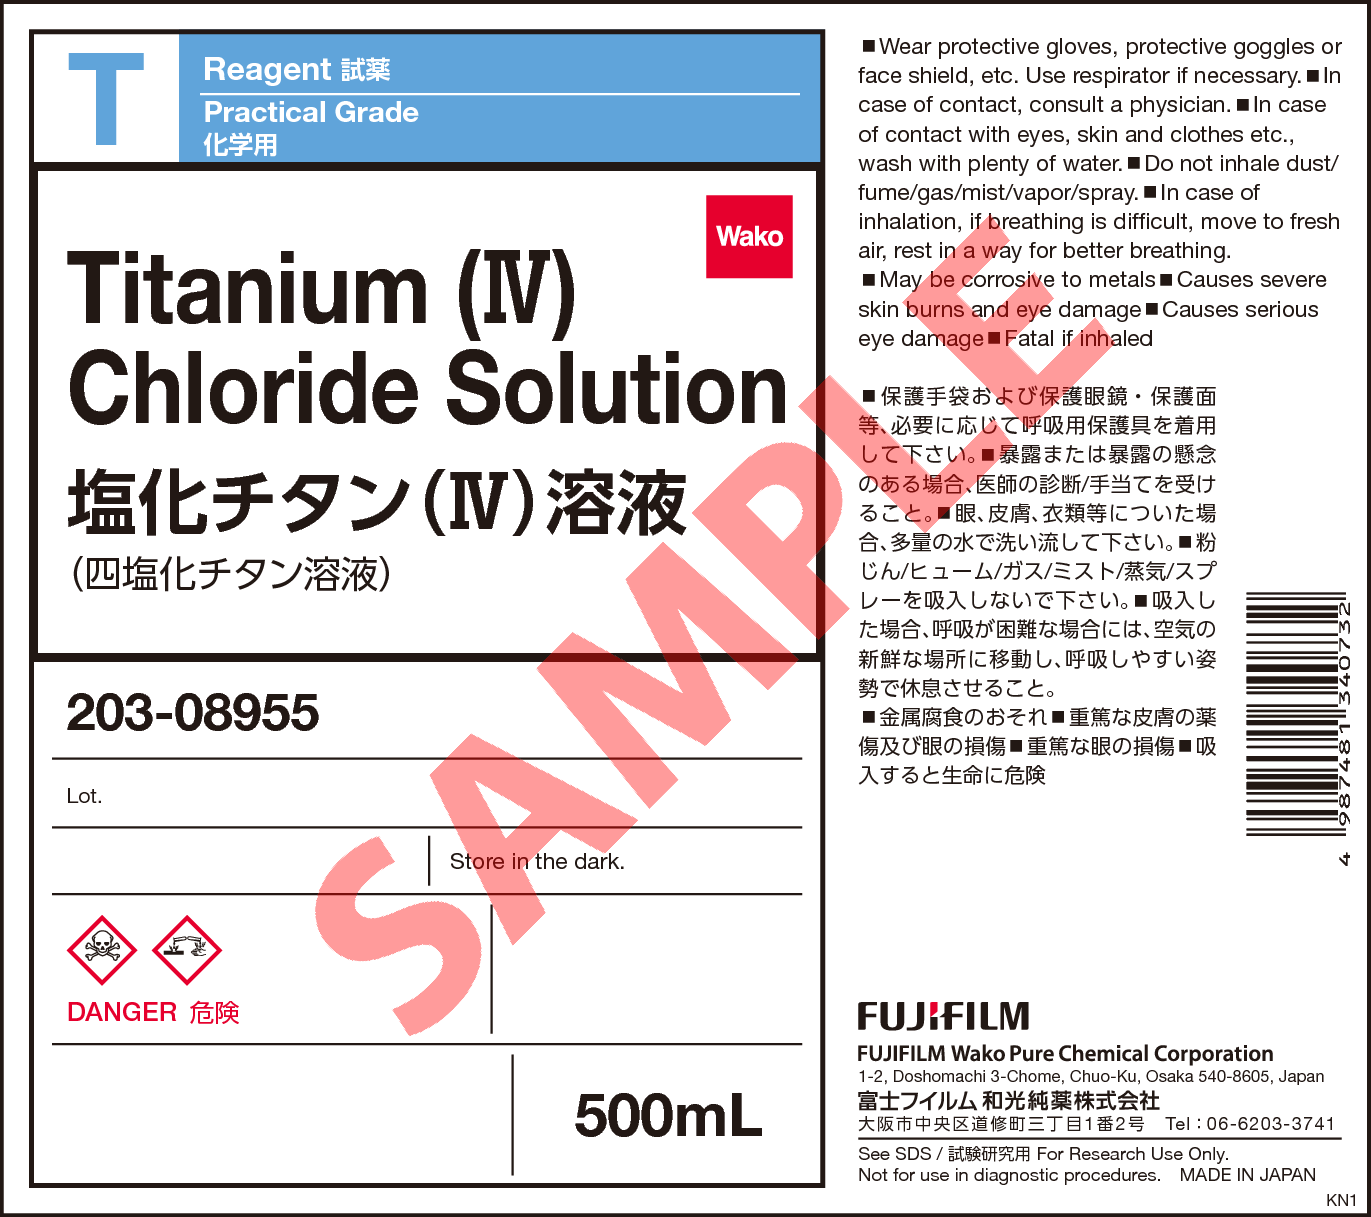 7550-45-0・塩化チタン(IV)溶液・Titanium(IV) Chloride Solution・203